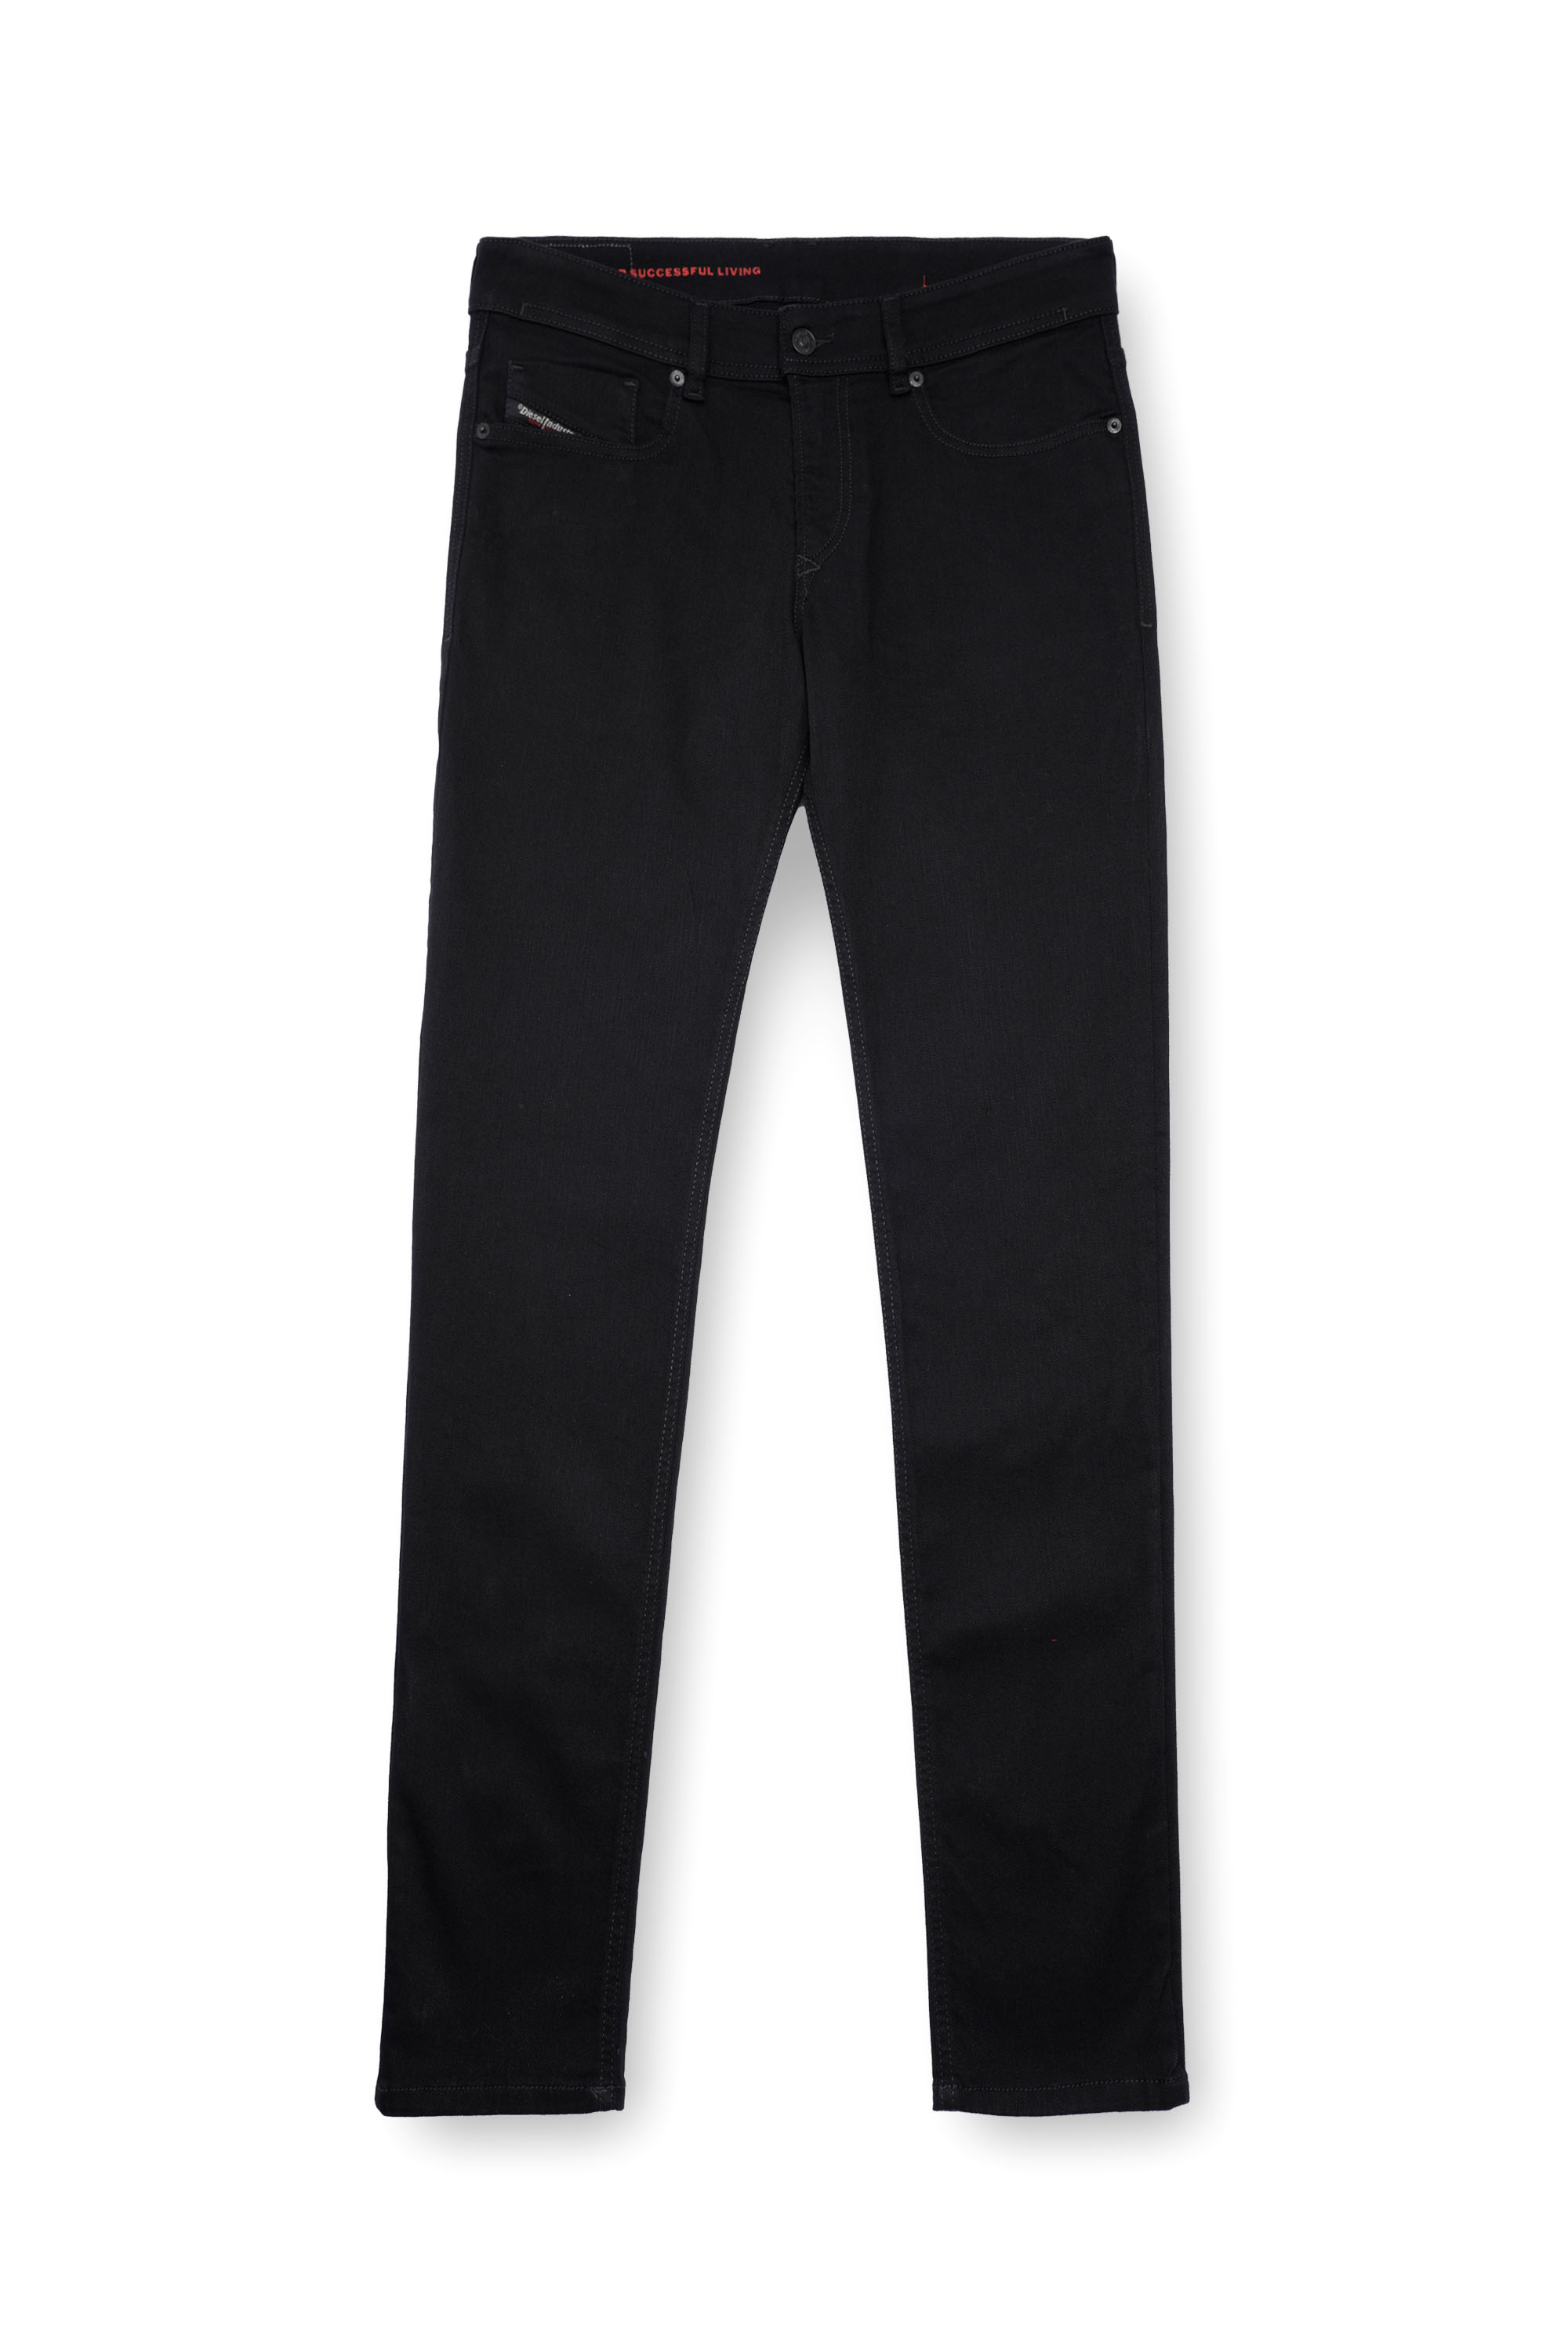 Diesel - Male Skinny Jeans 1979 Sleenker 09C51, Black/Dark Grey - Image 5